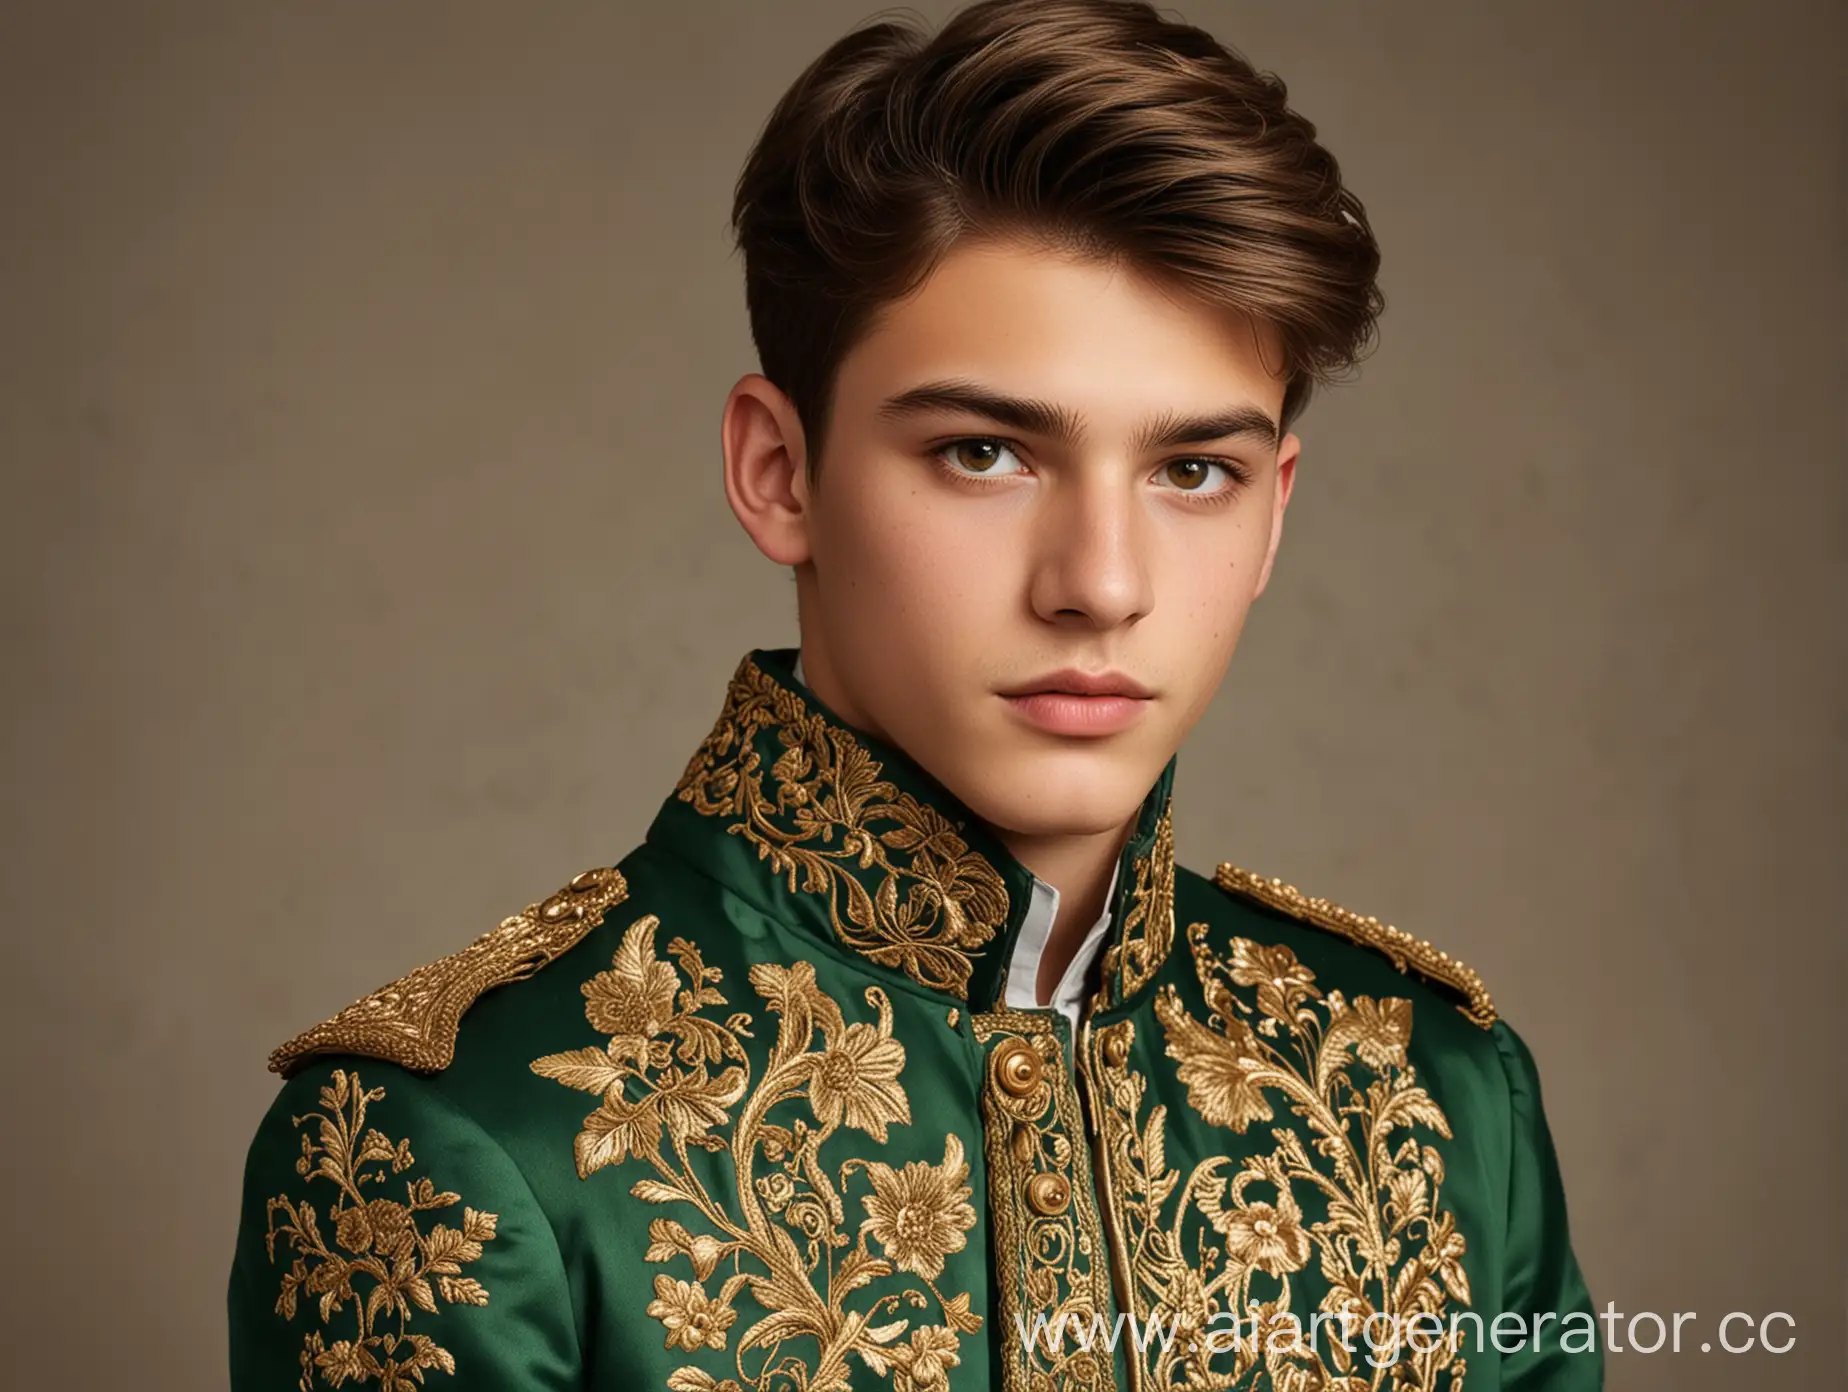 Парень 19 лет в зелёном пальто с золотой вышивкой. У парня коричневые волосы и светло коричневые глаза